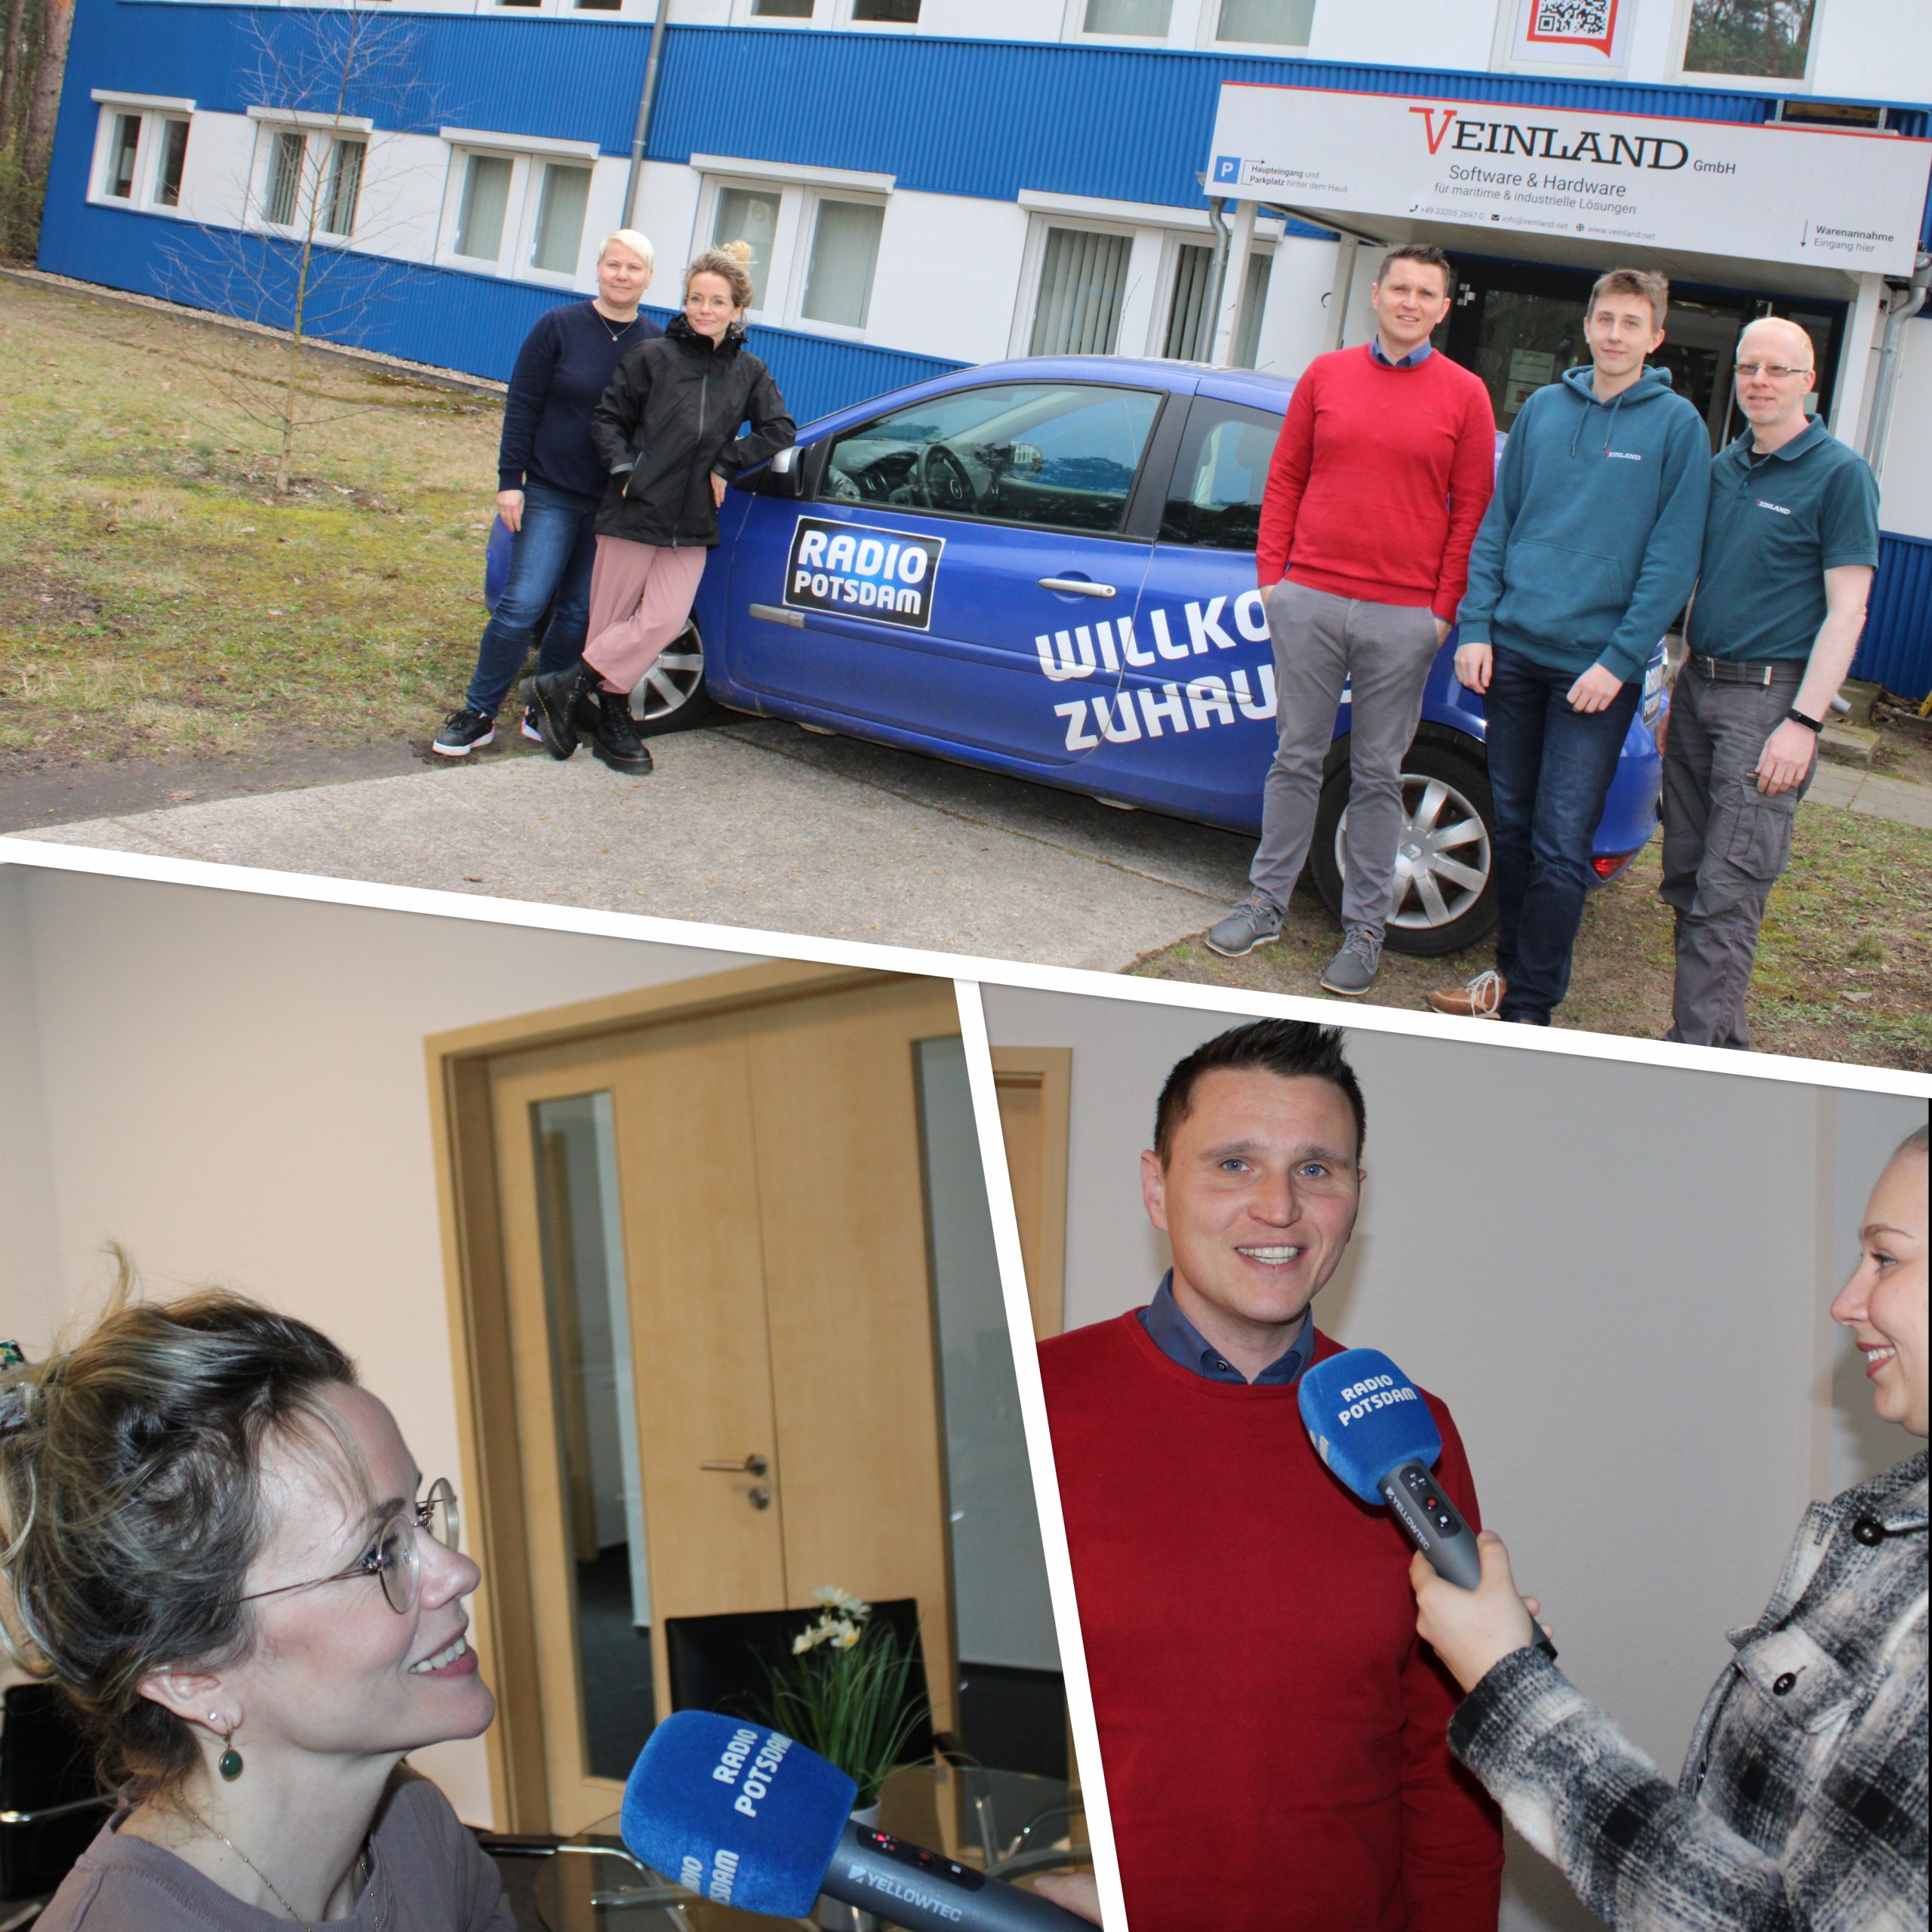 Radio Potsdam interviewed VEINLAND employees